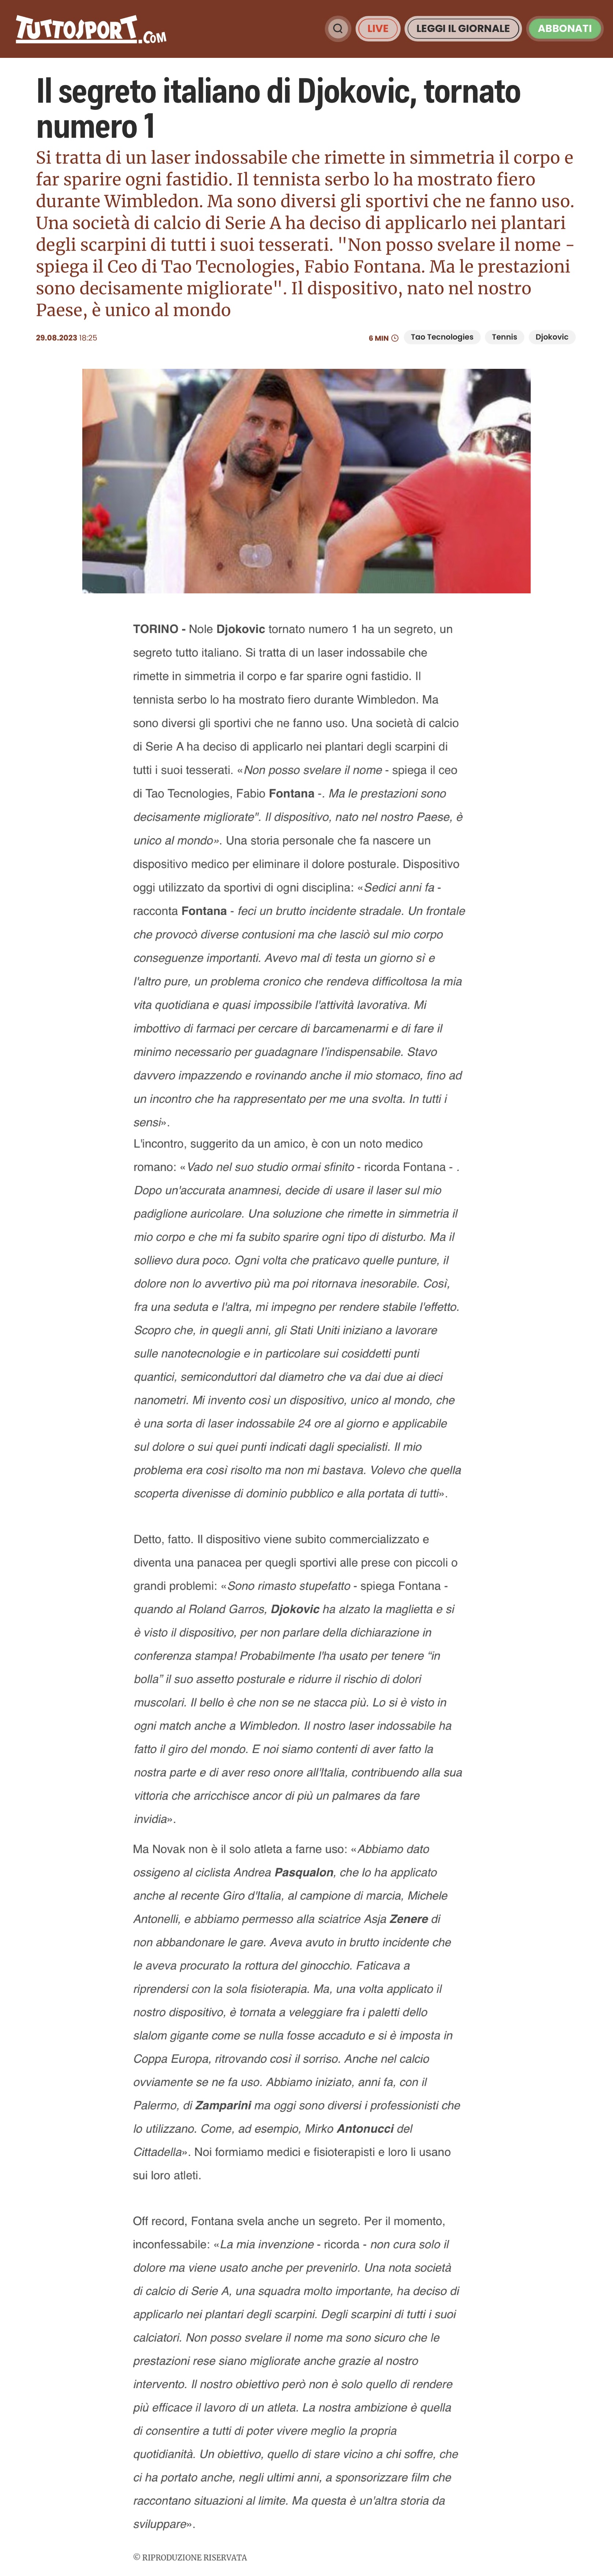 TUTTOSPORT - articoli djokovic in pdf per fabiophotonic